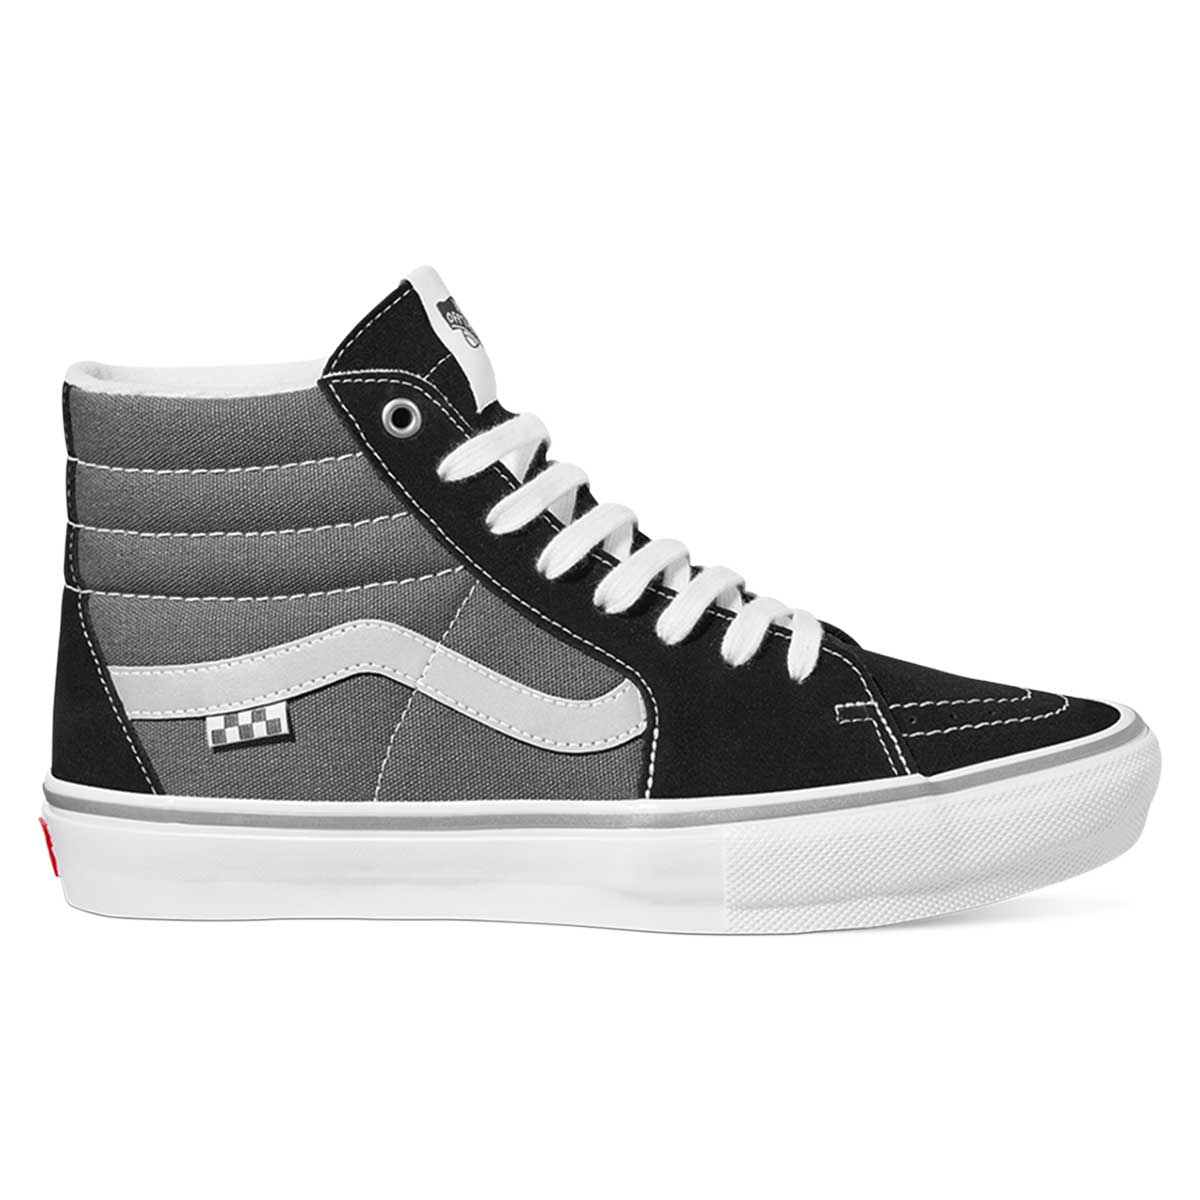 tieners storm Kosmisch Vans Skate Sk8-Hi Shoes - Reflective Black/Grey | SoCal Skateshop